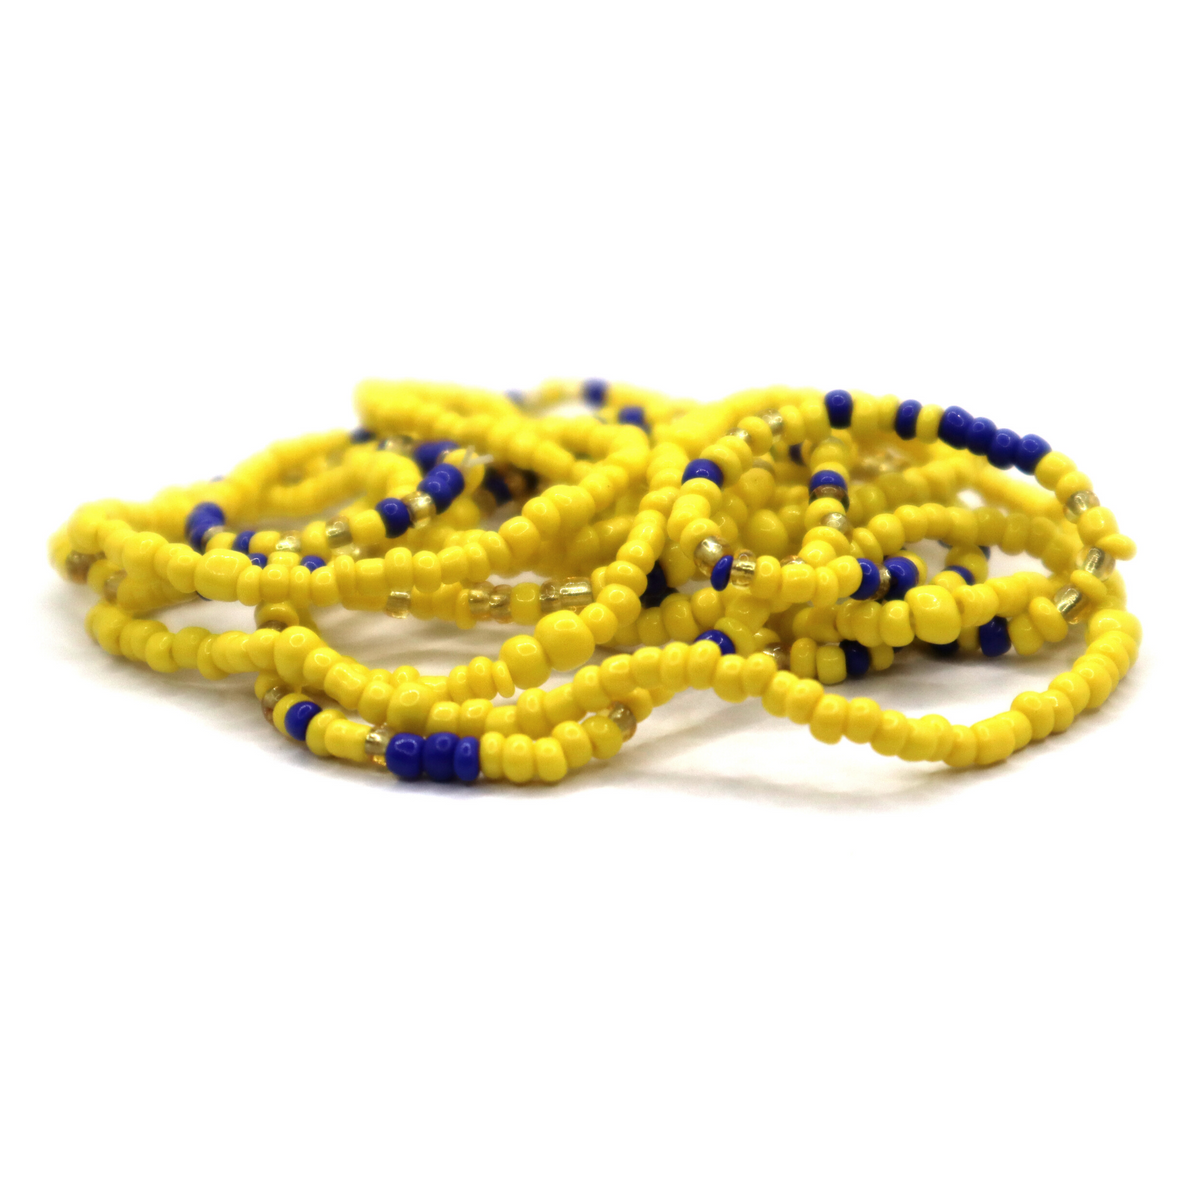 Waist Beads / African Waist Chain - OSAZE - Peach / gold (elastic) –  AfricanFabs